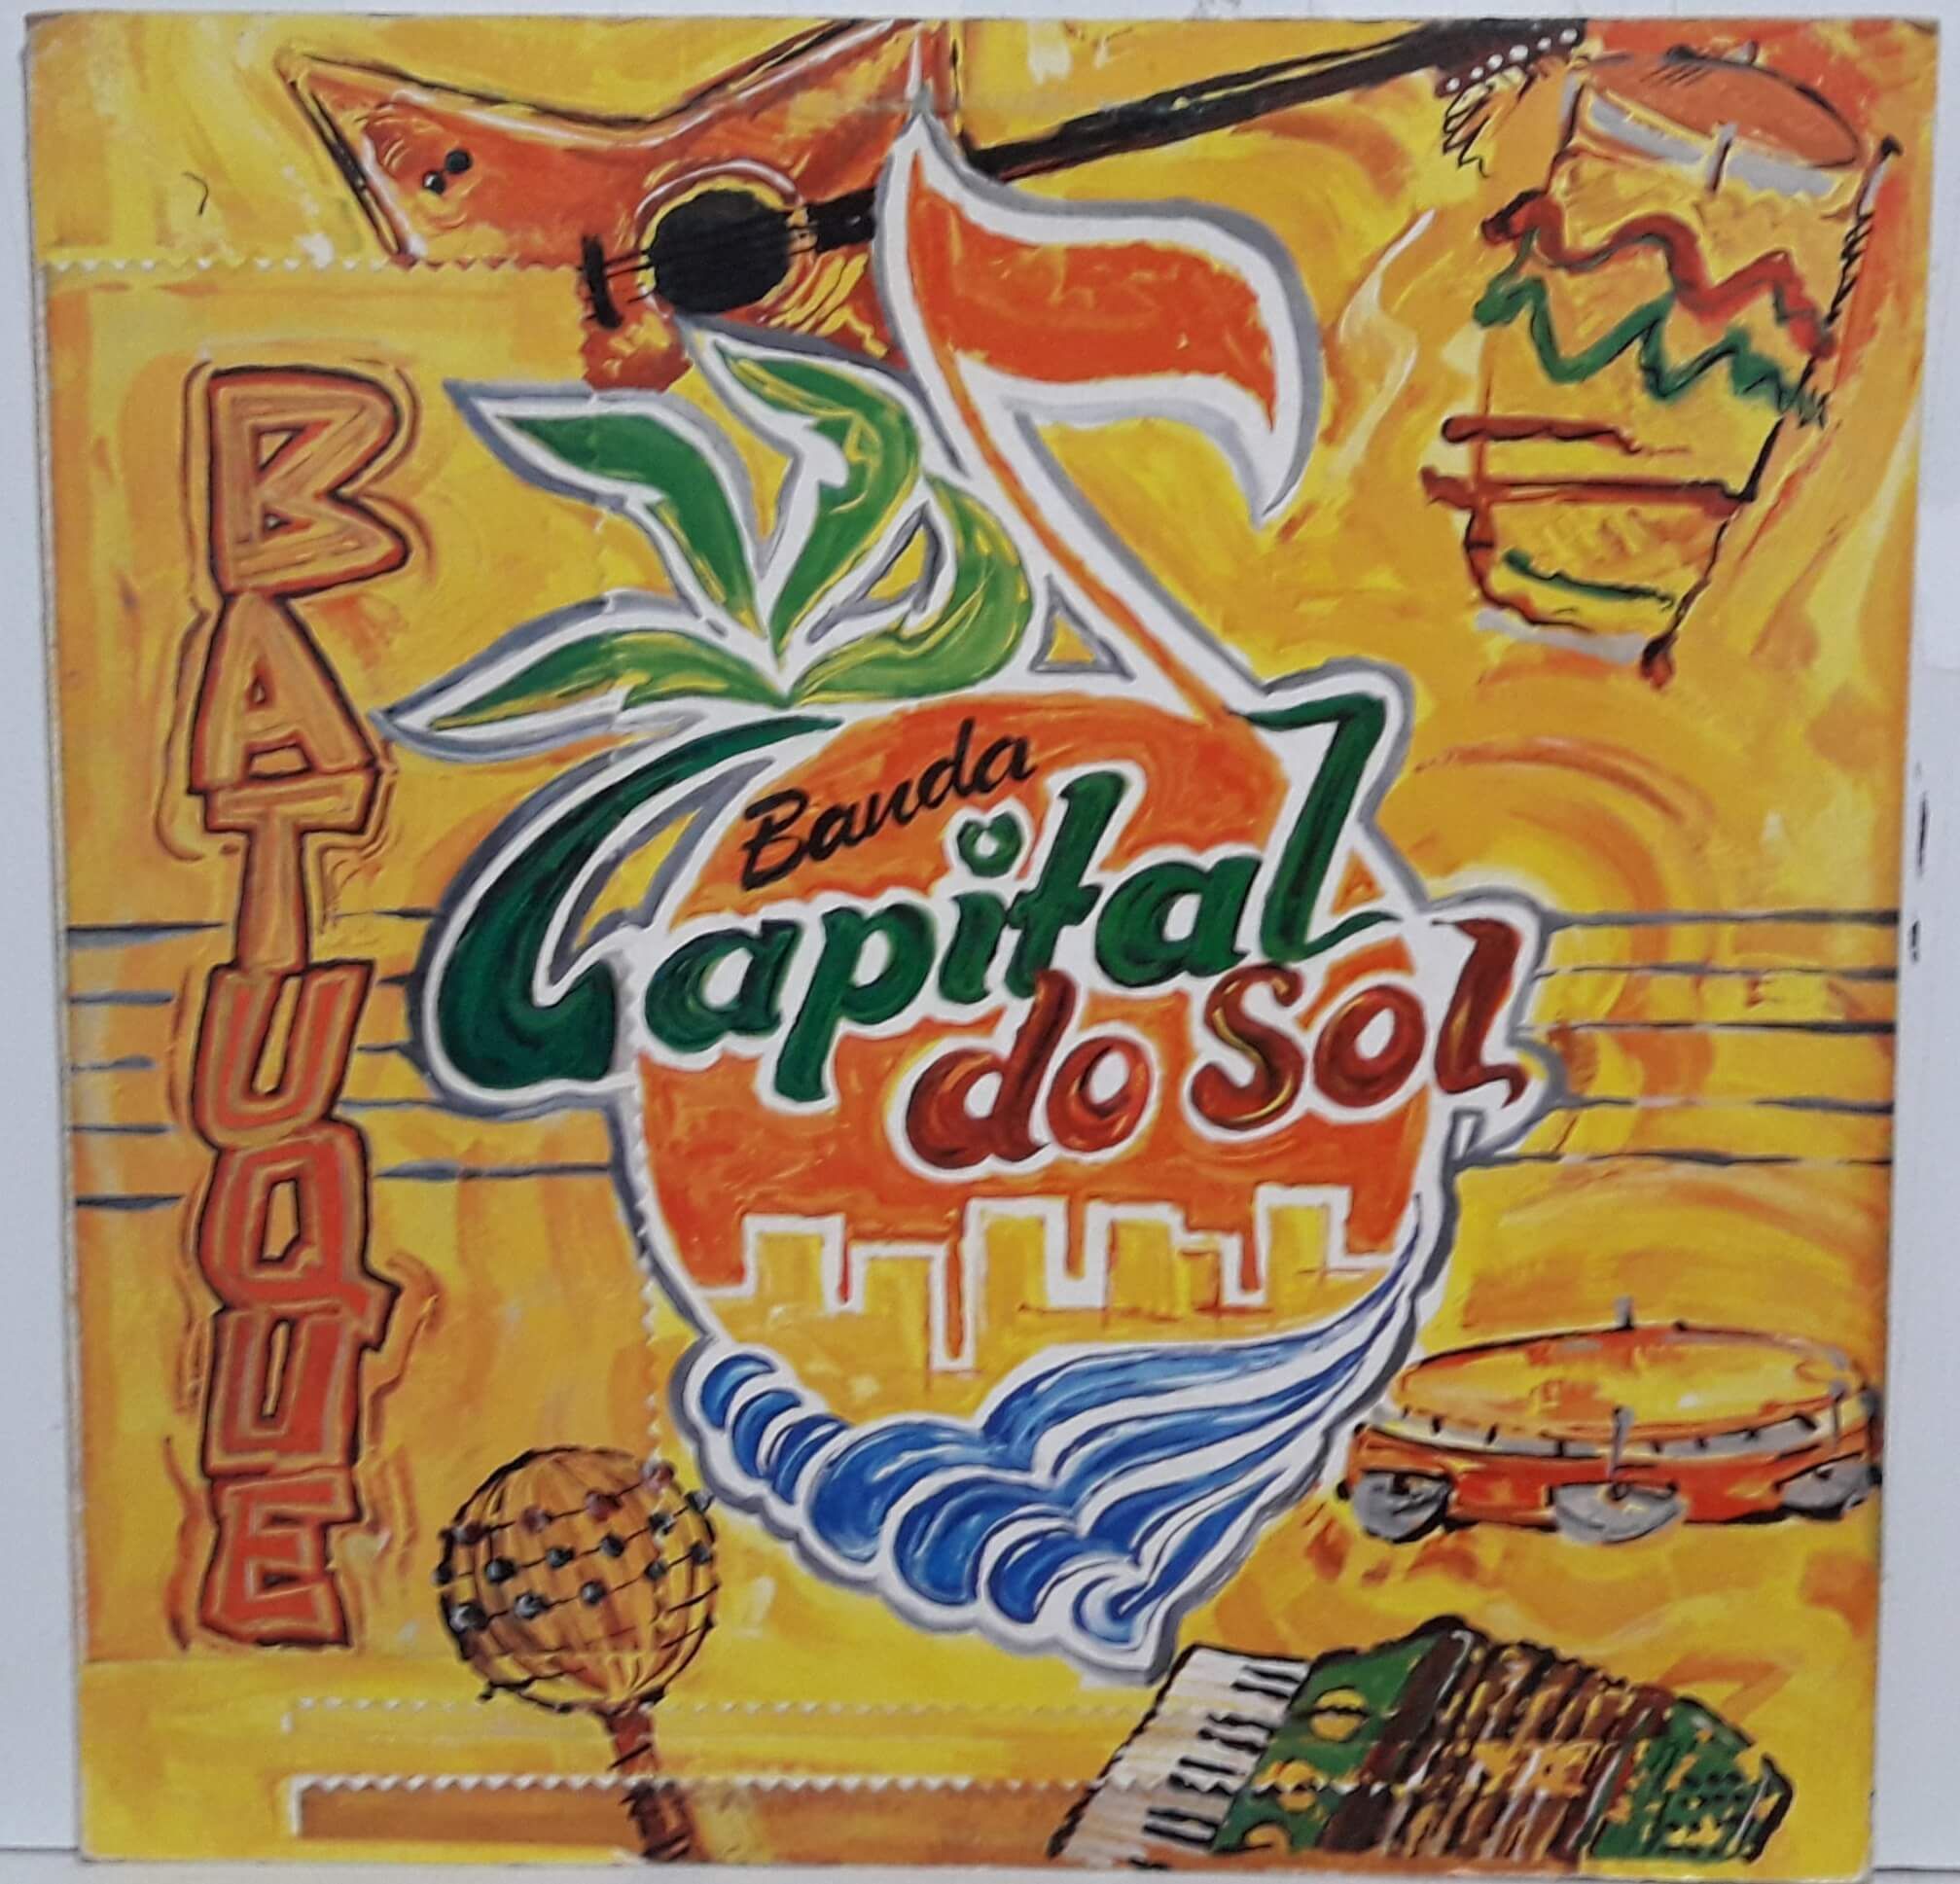 Imagem do álbum Batuque do(a) artista Capital Do Sol